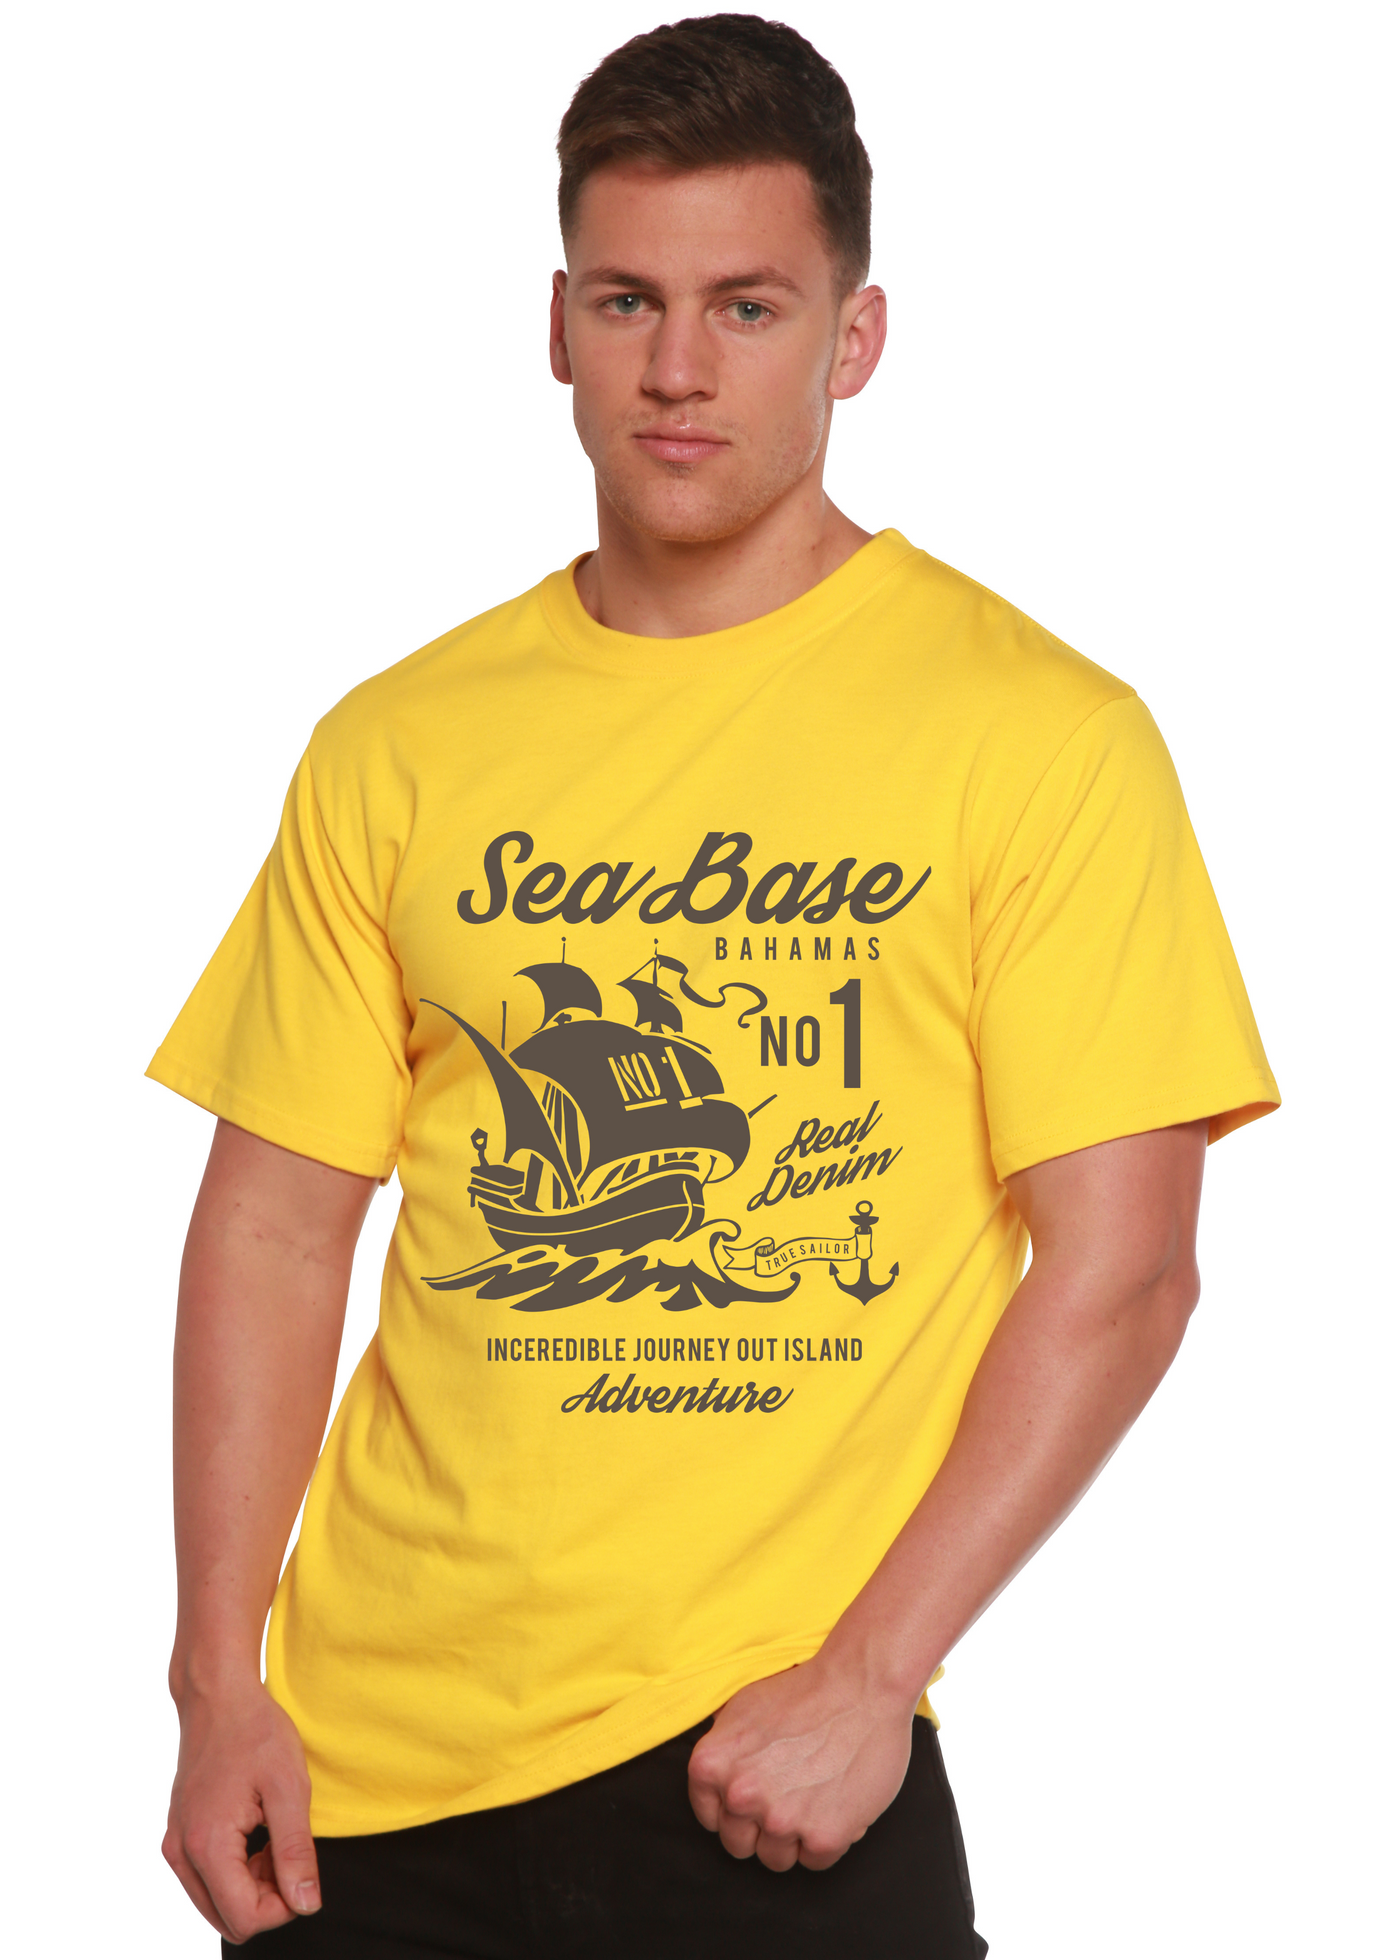 Sea Base men's bamboo tshirt lemon chrome